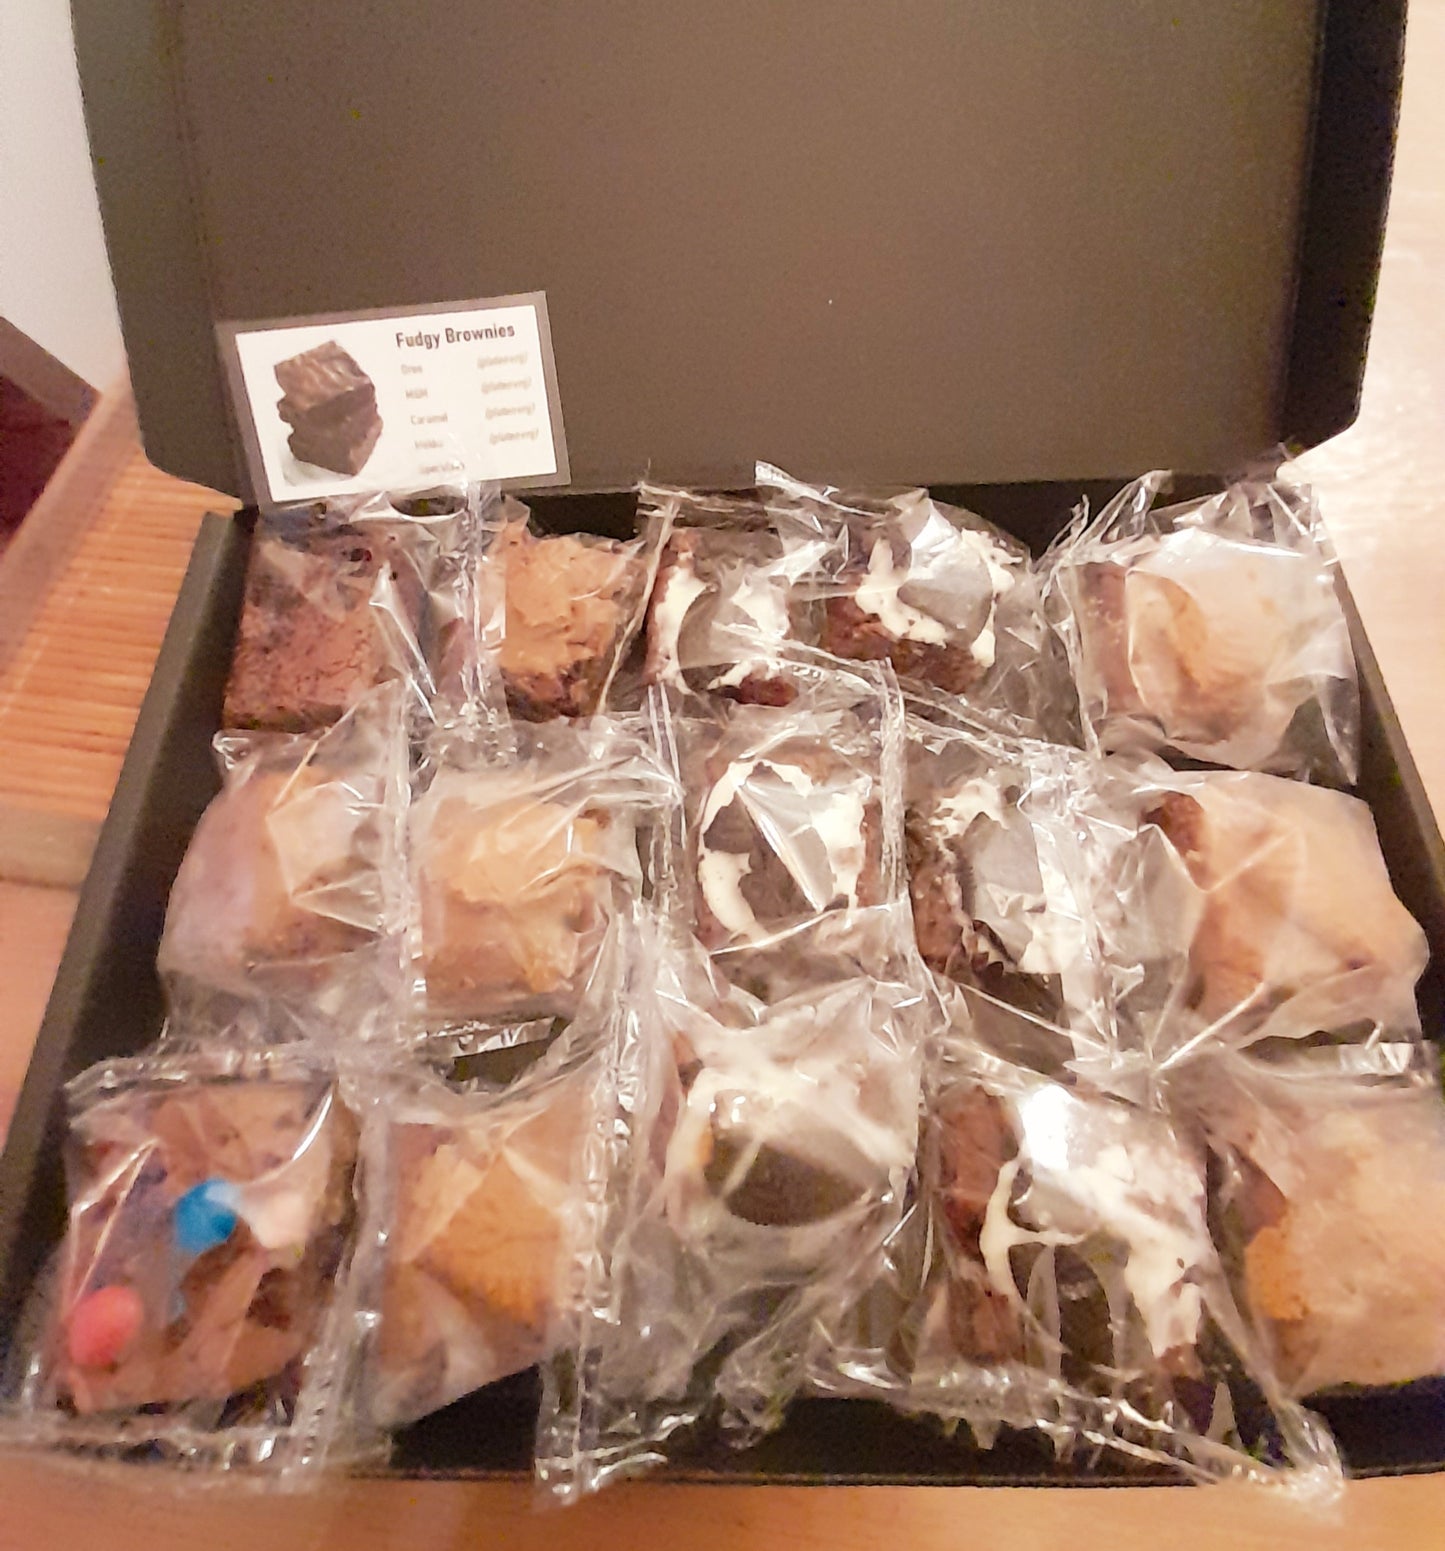 Browniebox met 15 heerlijke fudgy-brownies (ook glutenvrije keuzes) - 22,50 EUR